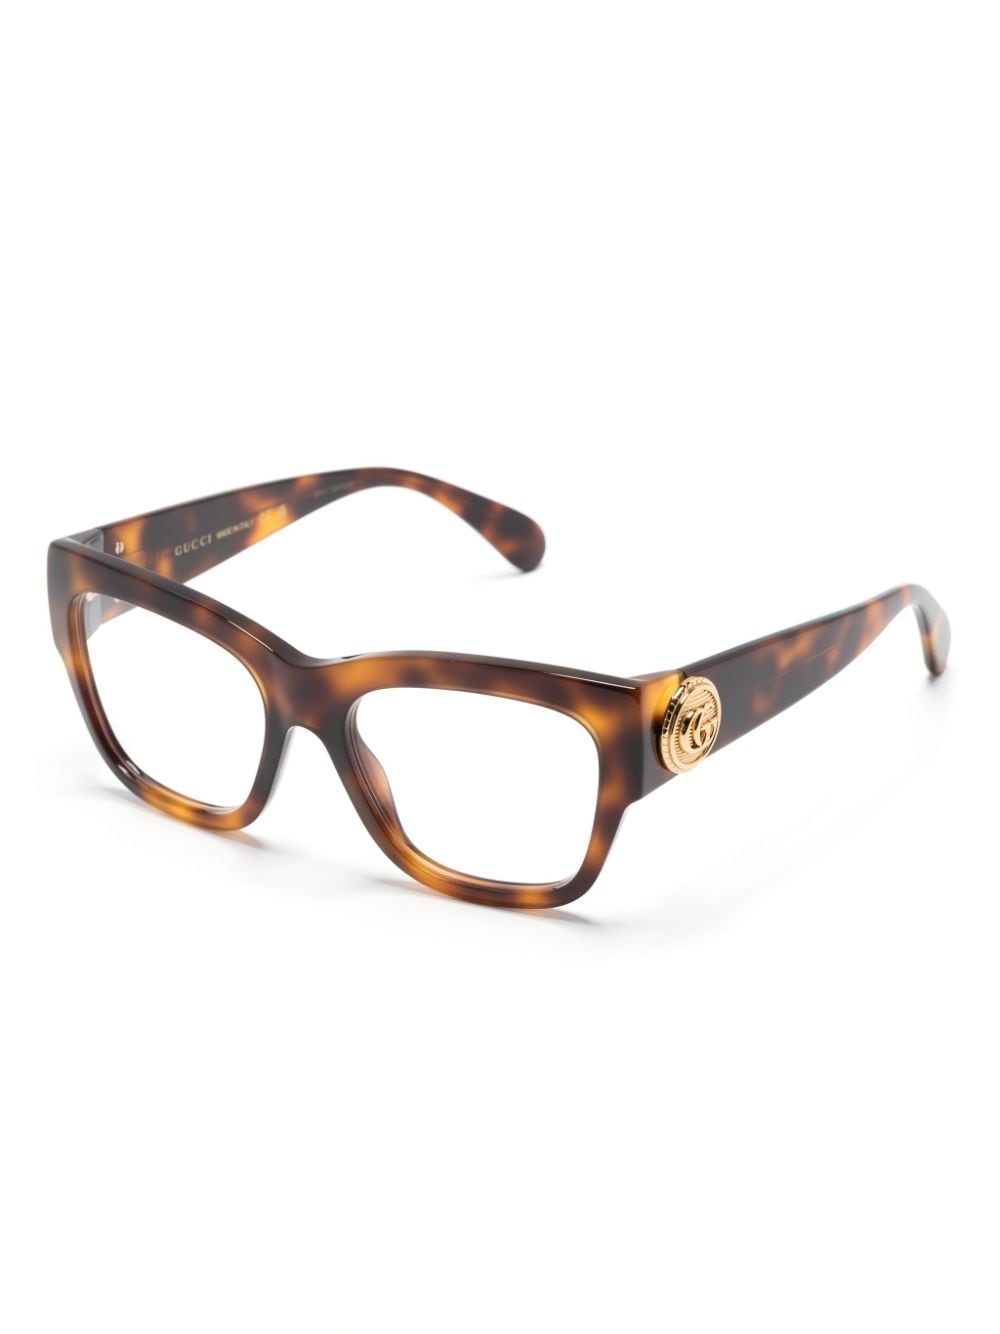 Gucci Eyewear GG14100 bril met schildpadschild design - Bruin